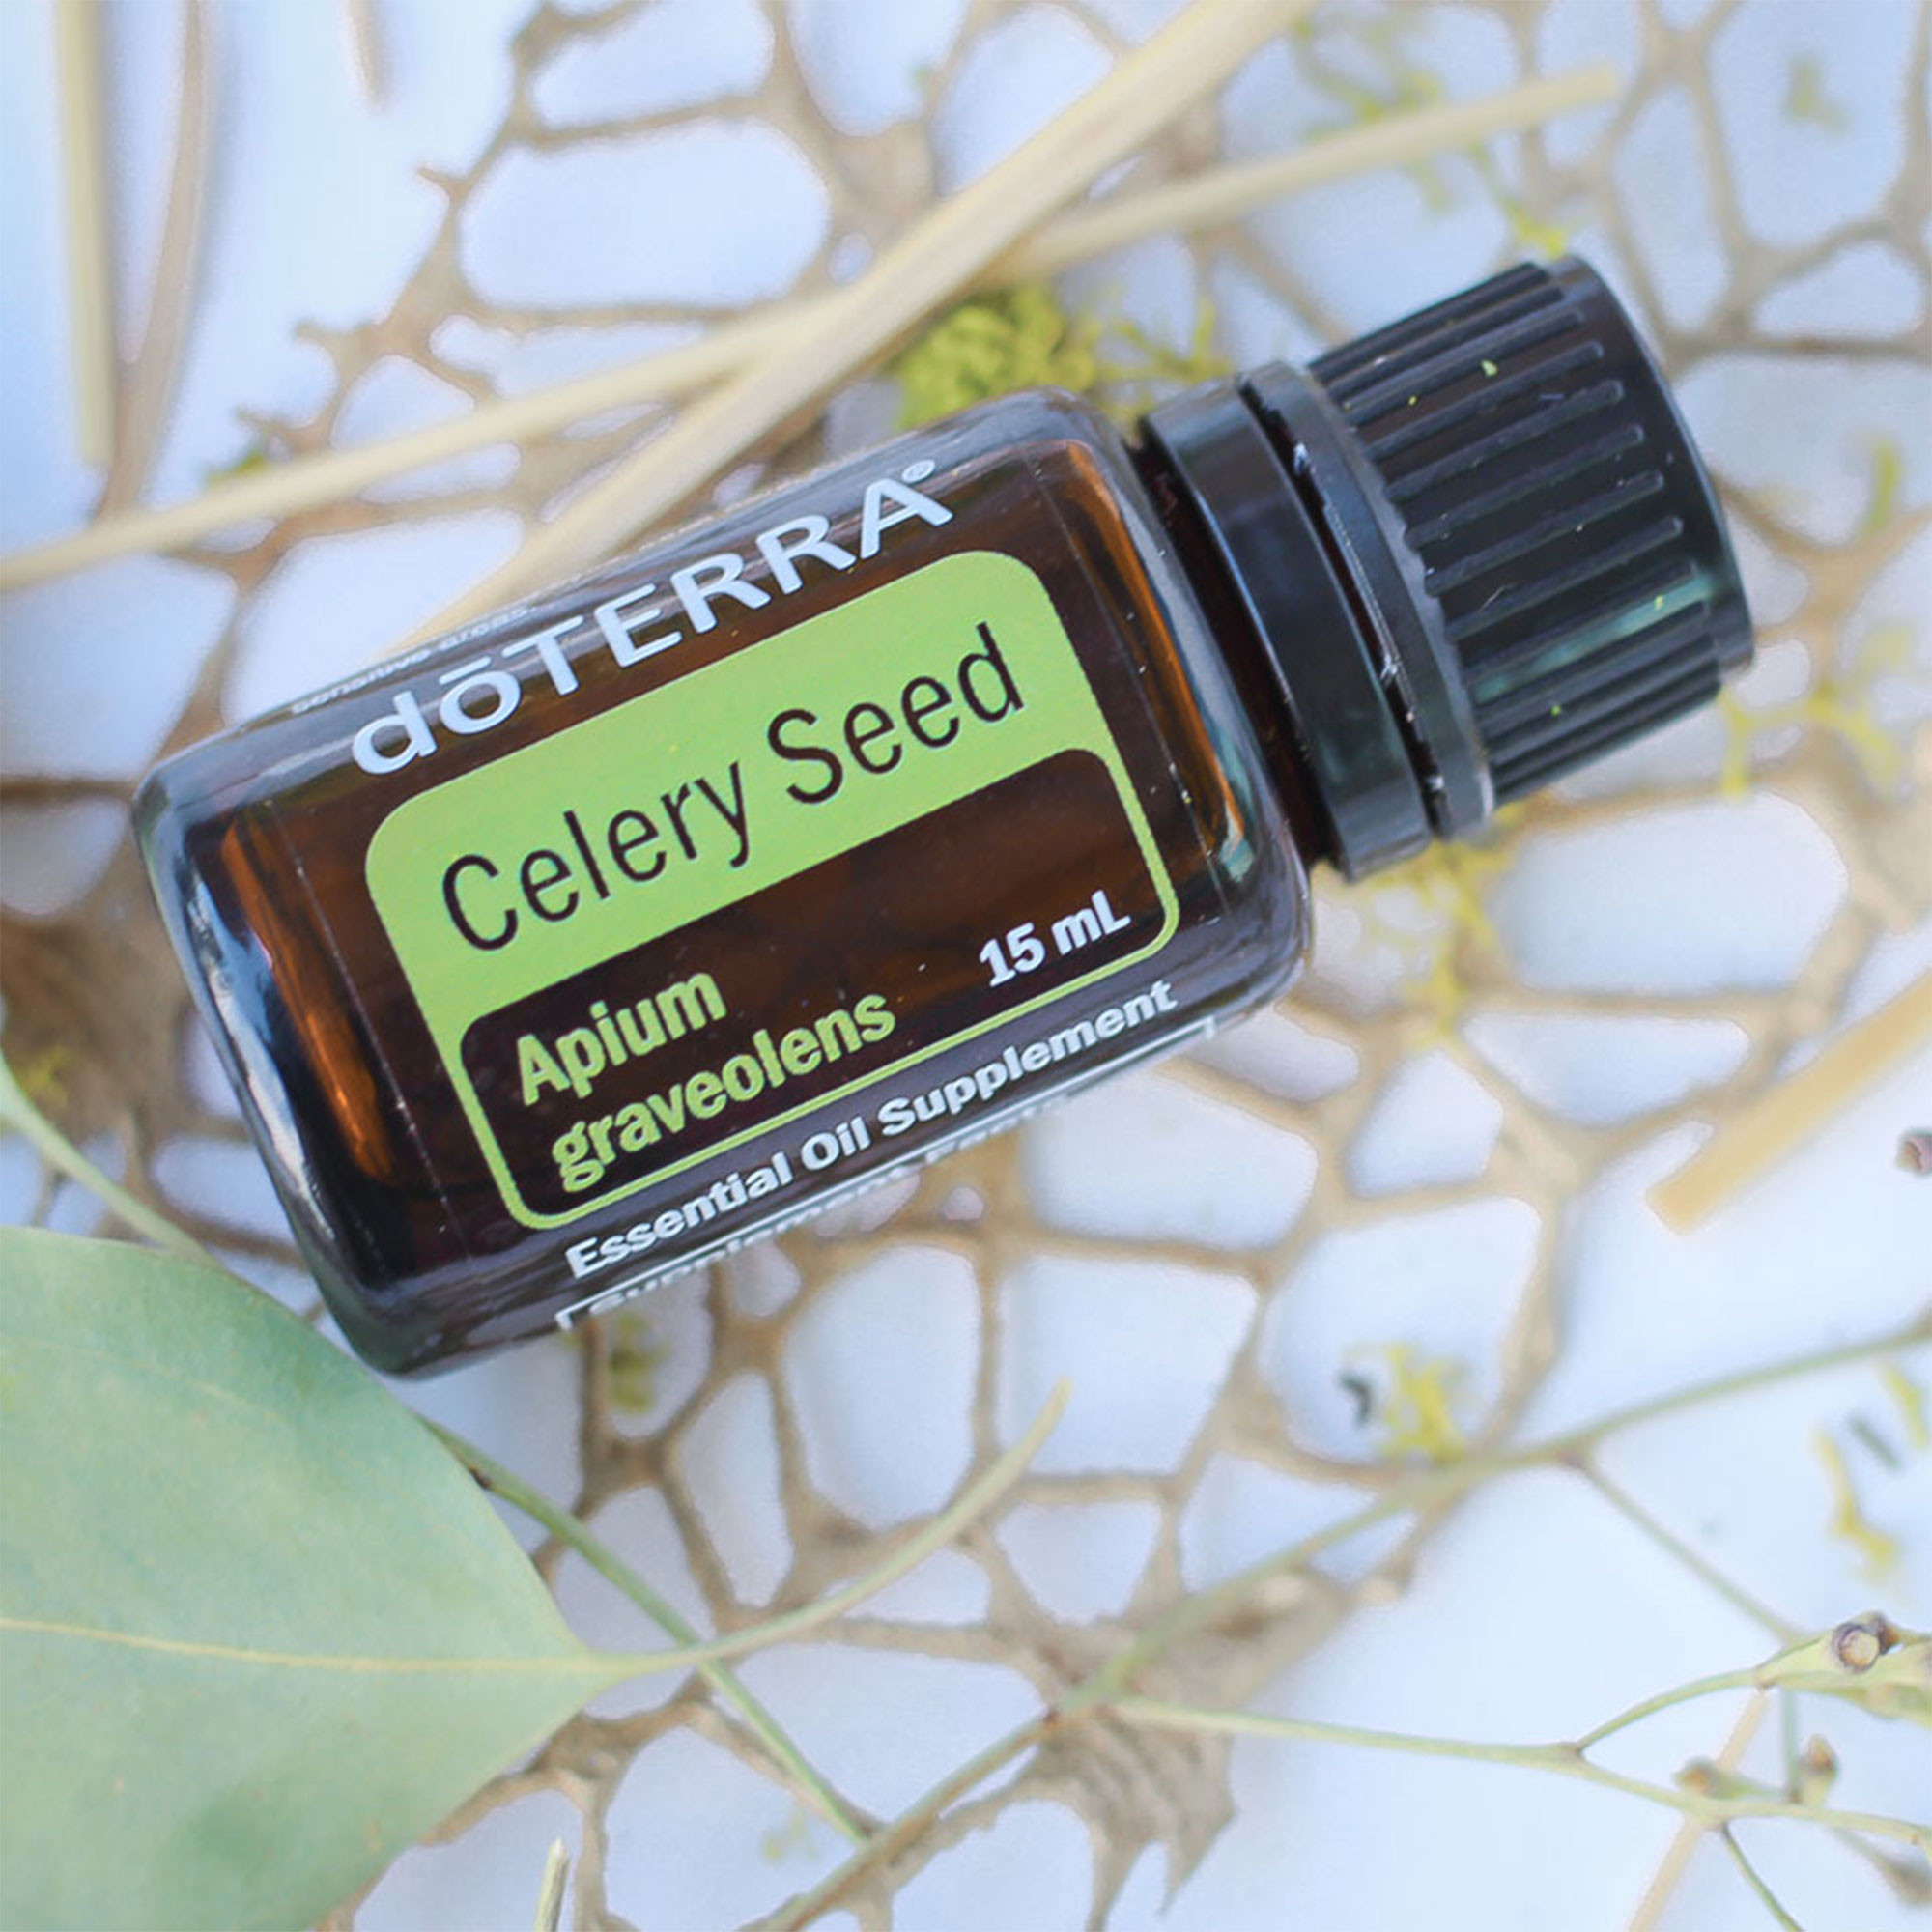 DoTERRA Celery Seed - Эфирное масло сельдерея дотерра